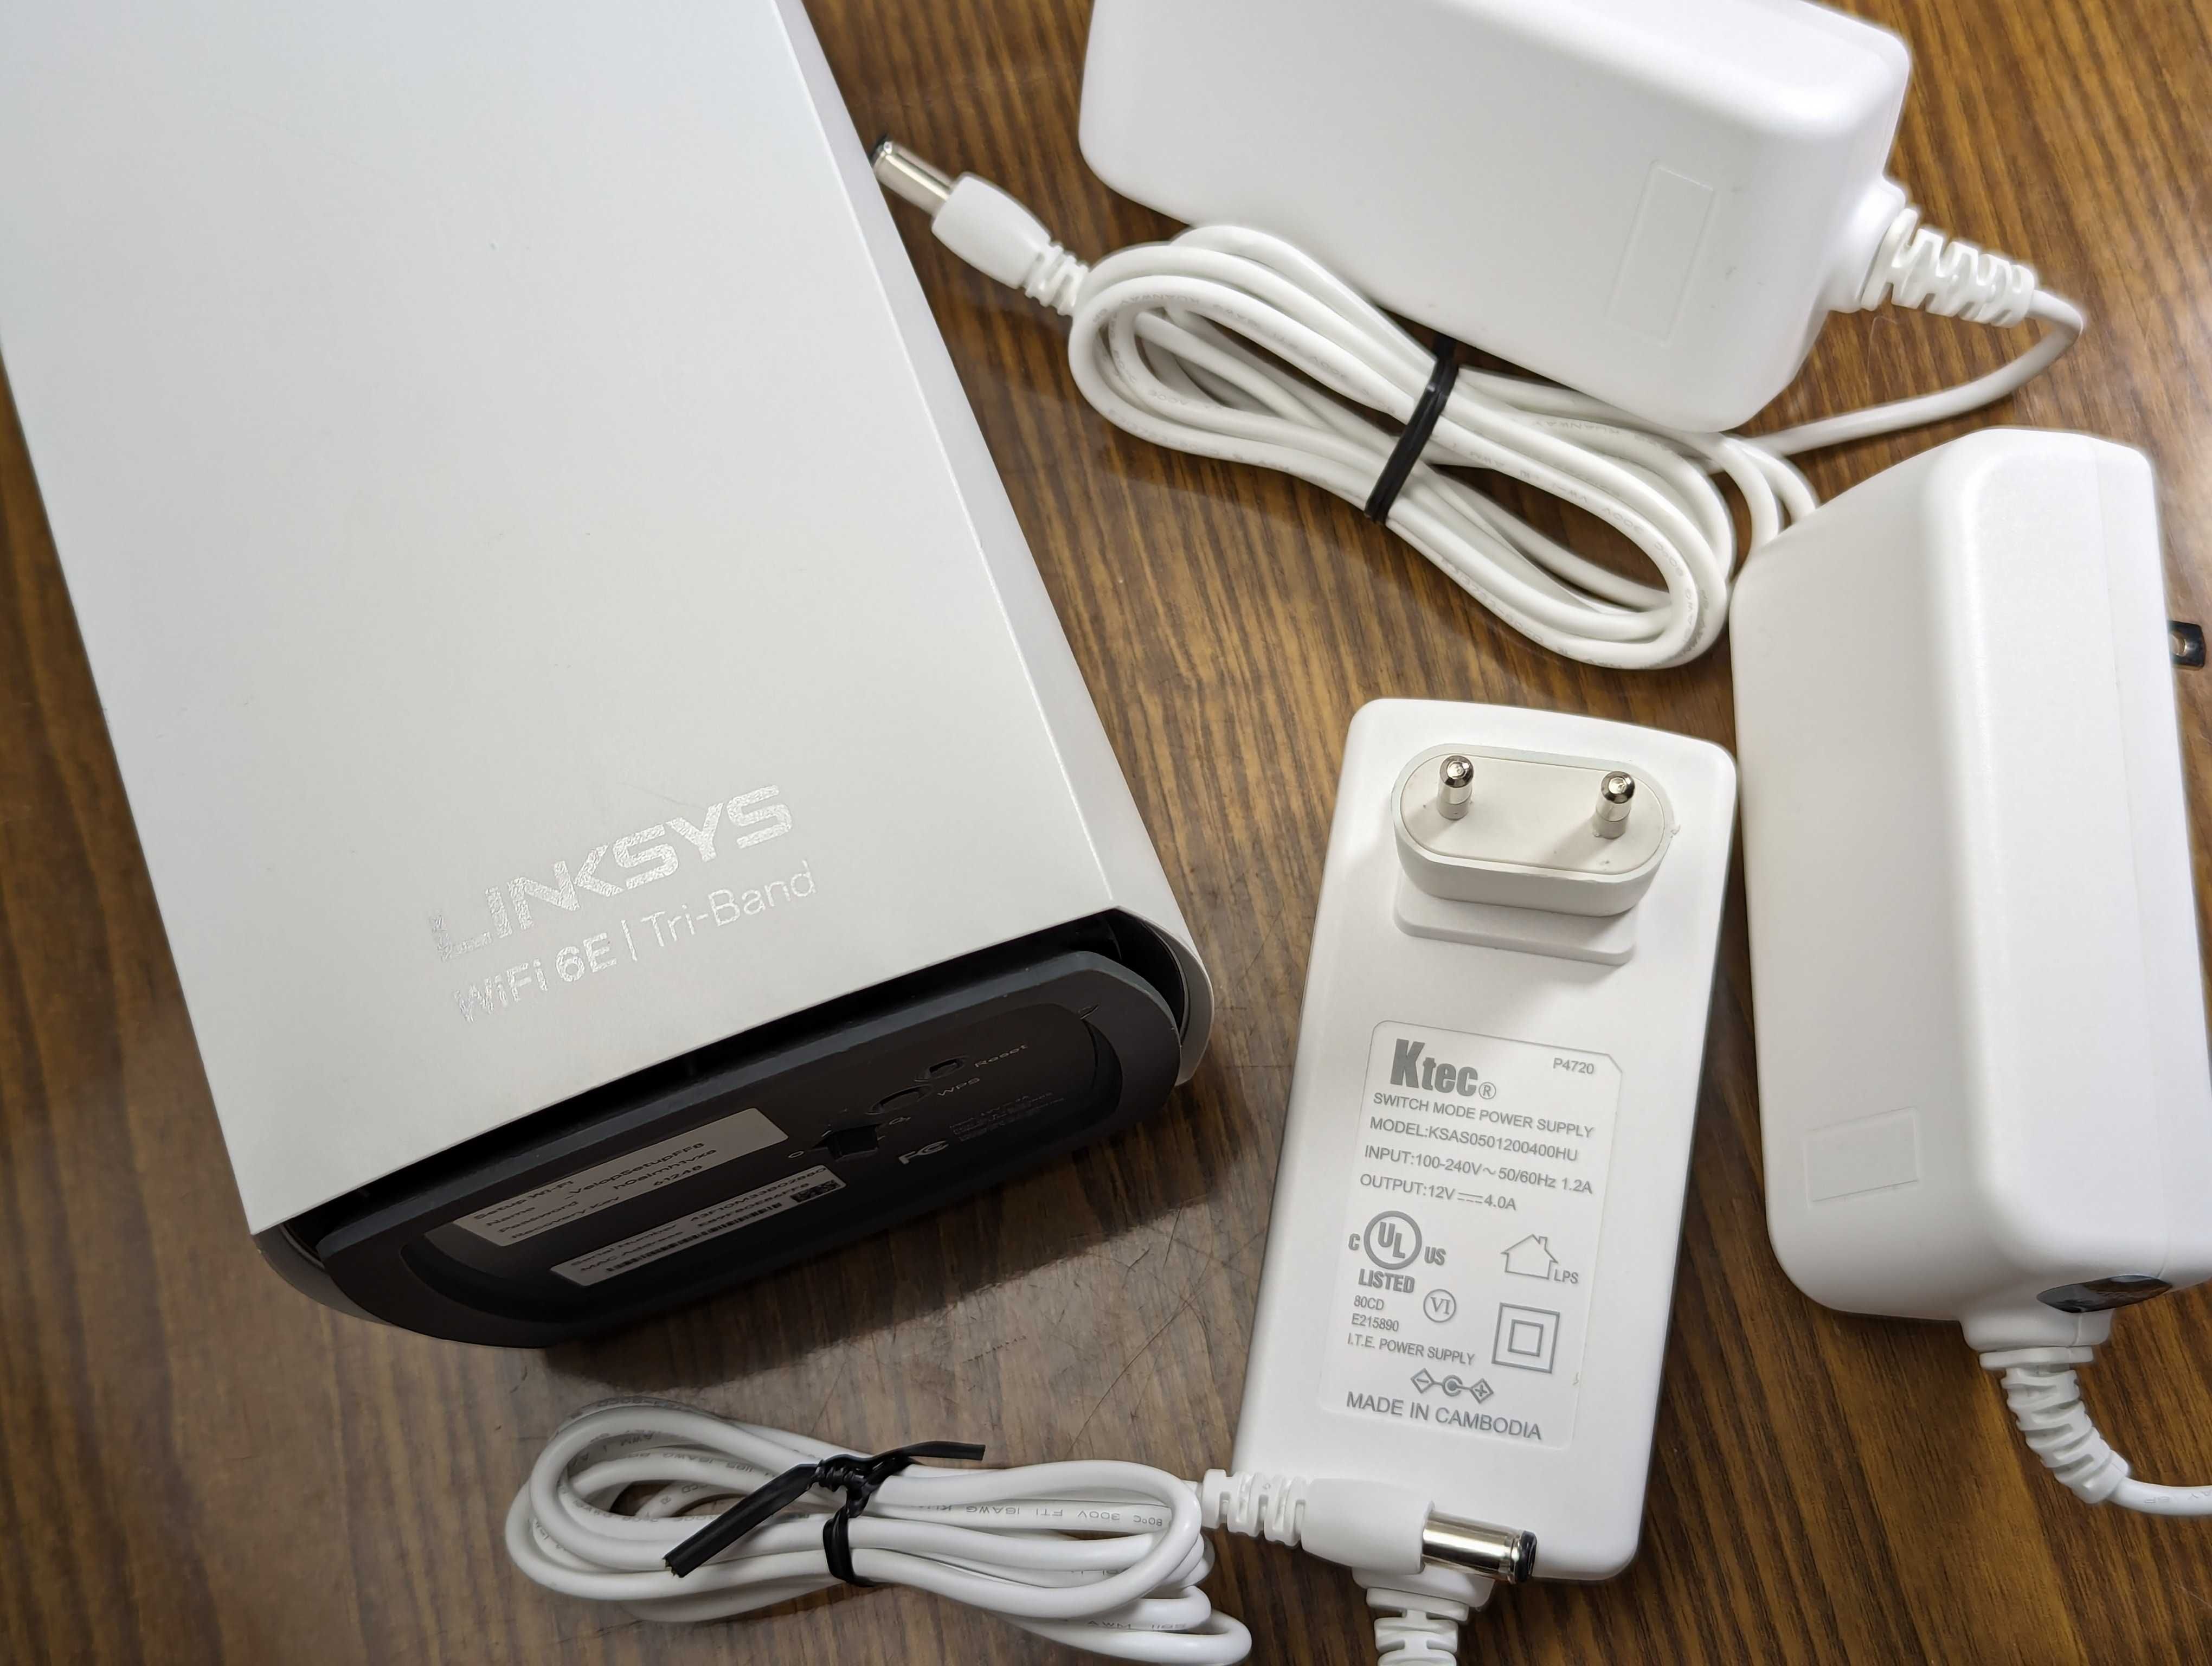 Роутер Linksys MX8500 Atlas Max 6E Wi-Fi Mesh гигабит USA гарантия